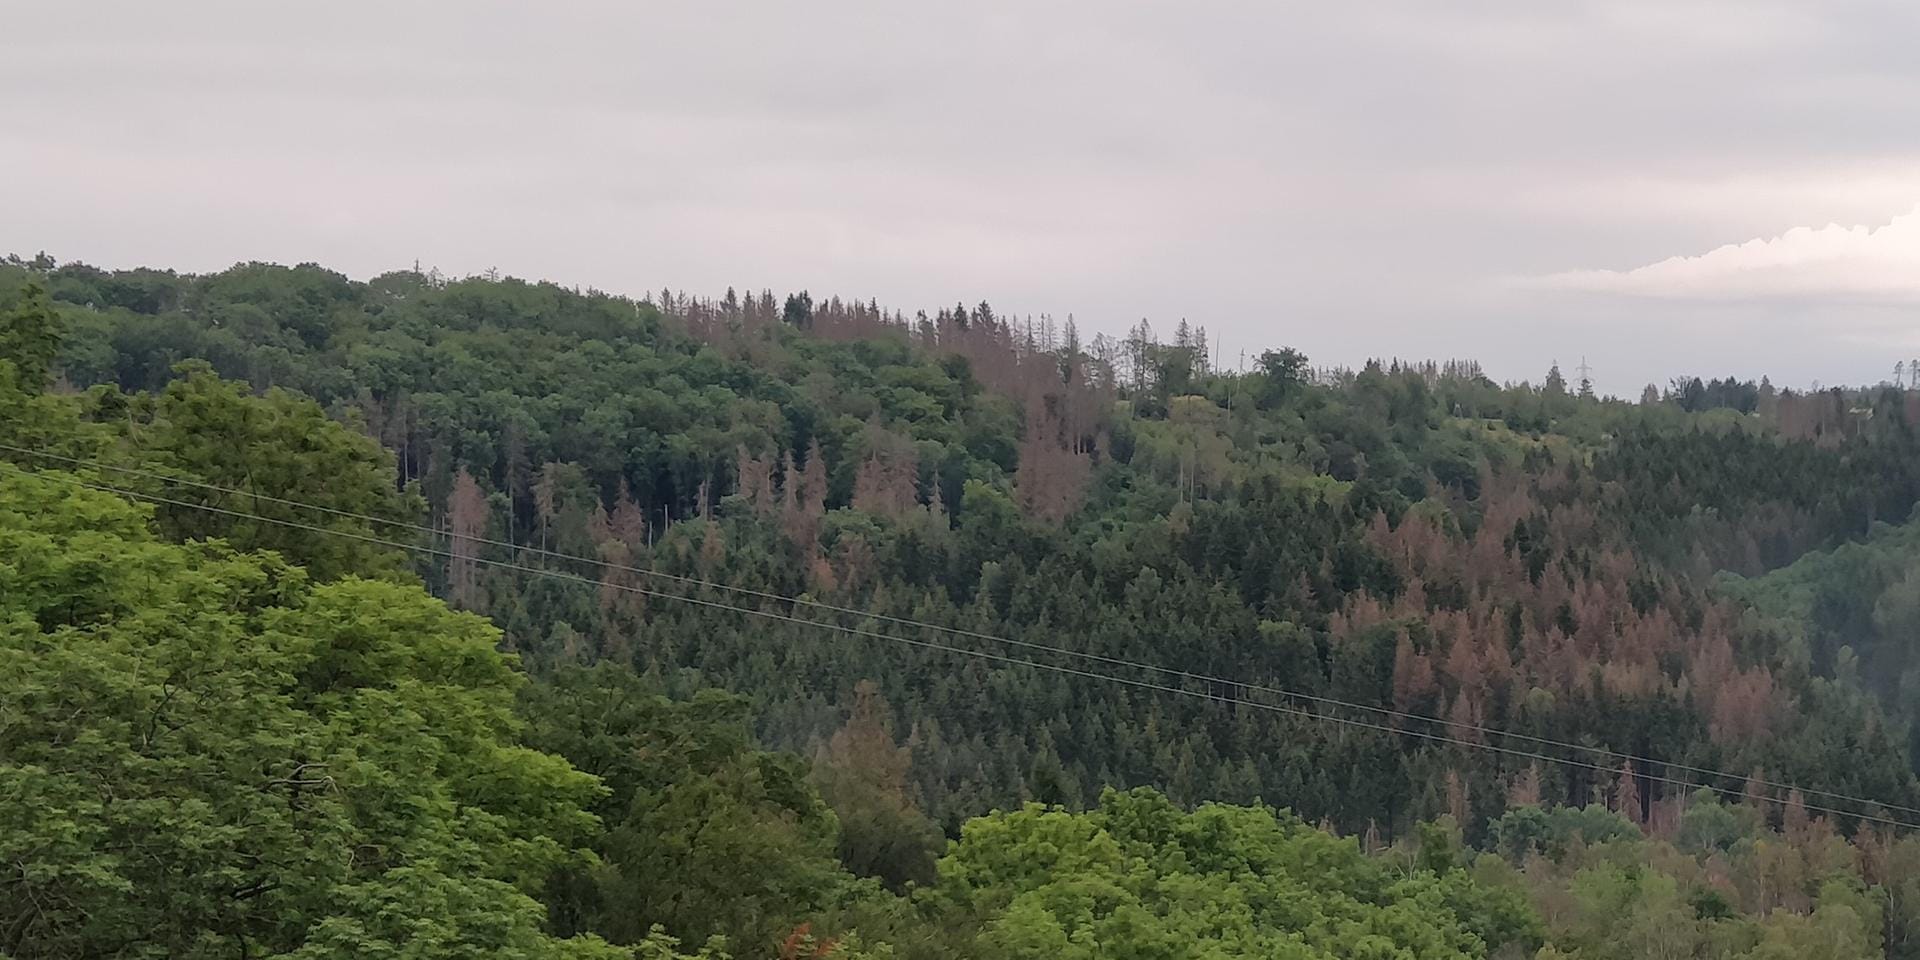 Wer im Harz unterwegs war, sah überall braune Baumkronen aus den Wäldern ragen. Meist sind es Fichten, die von Borkenkäfern befallen wurden.